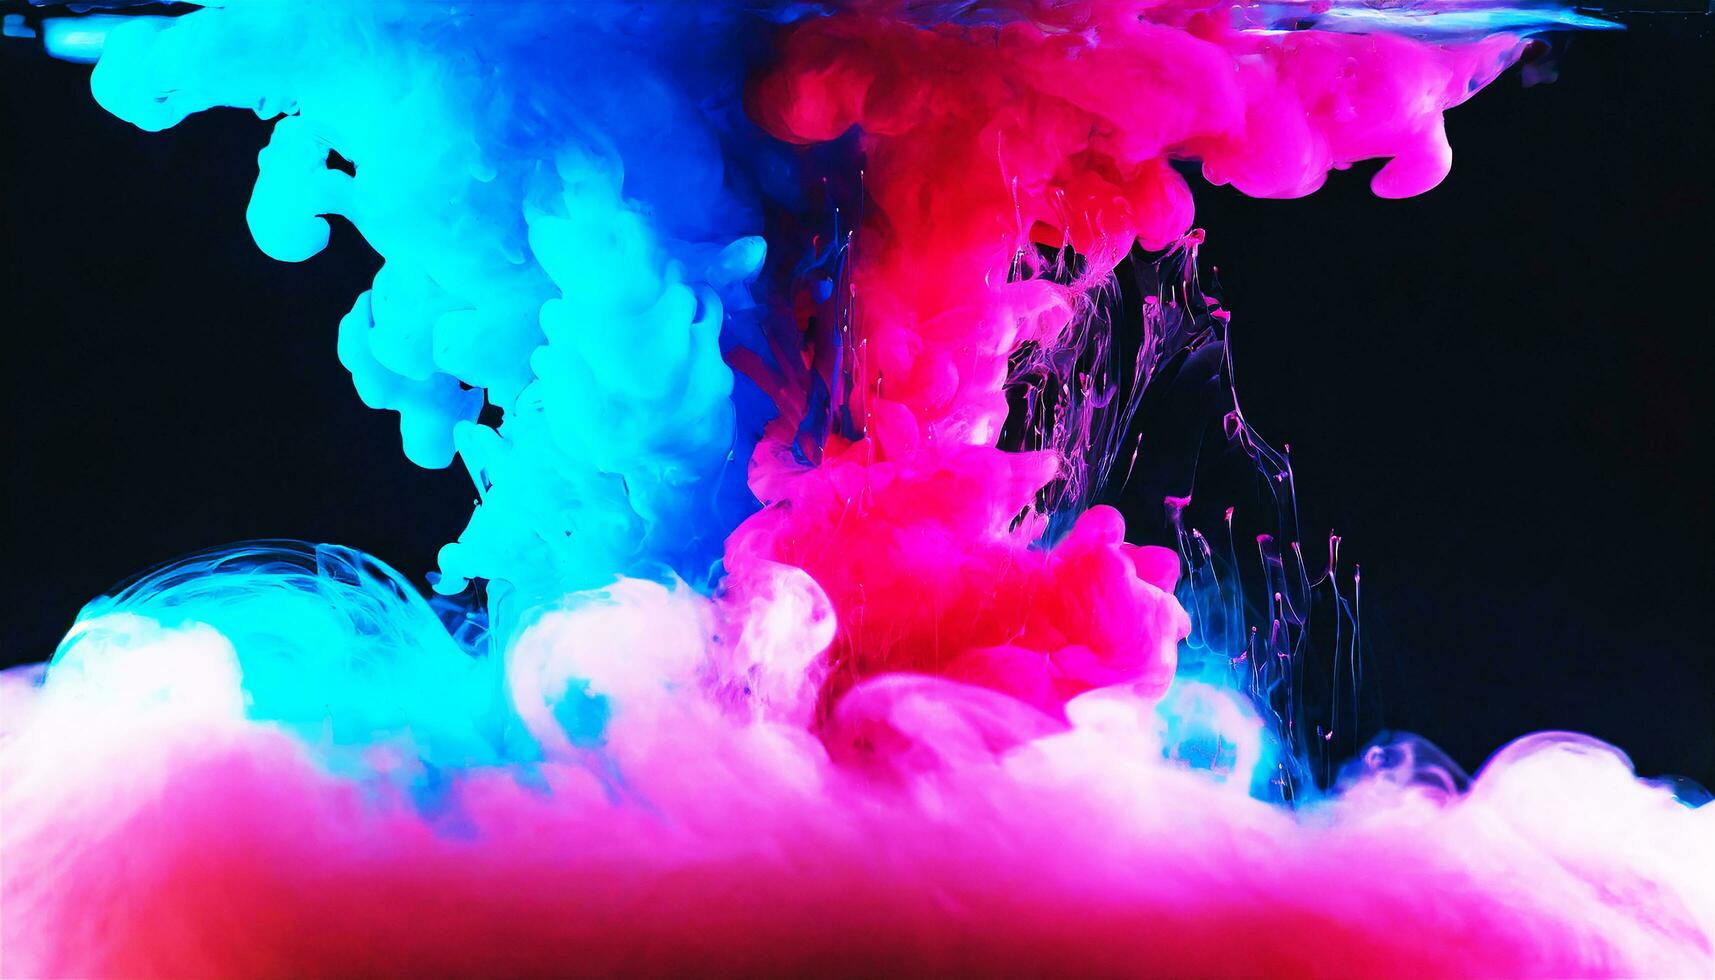 ai generiert abstrakt bunt Rosa und Blau Farbstoff im Wasser auf dunkel Hintergrund. foto